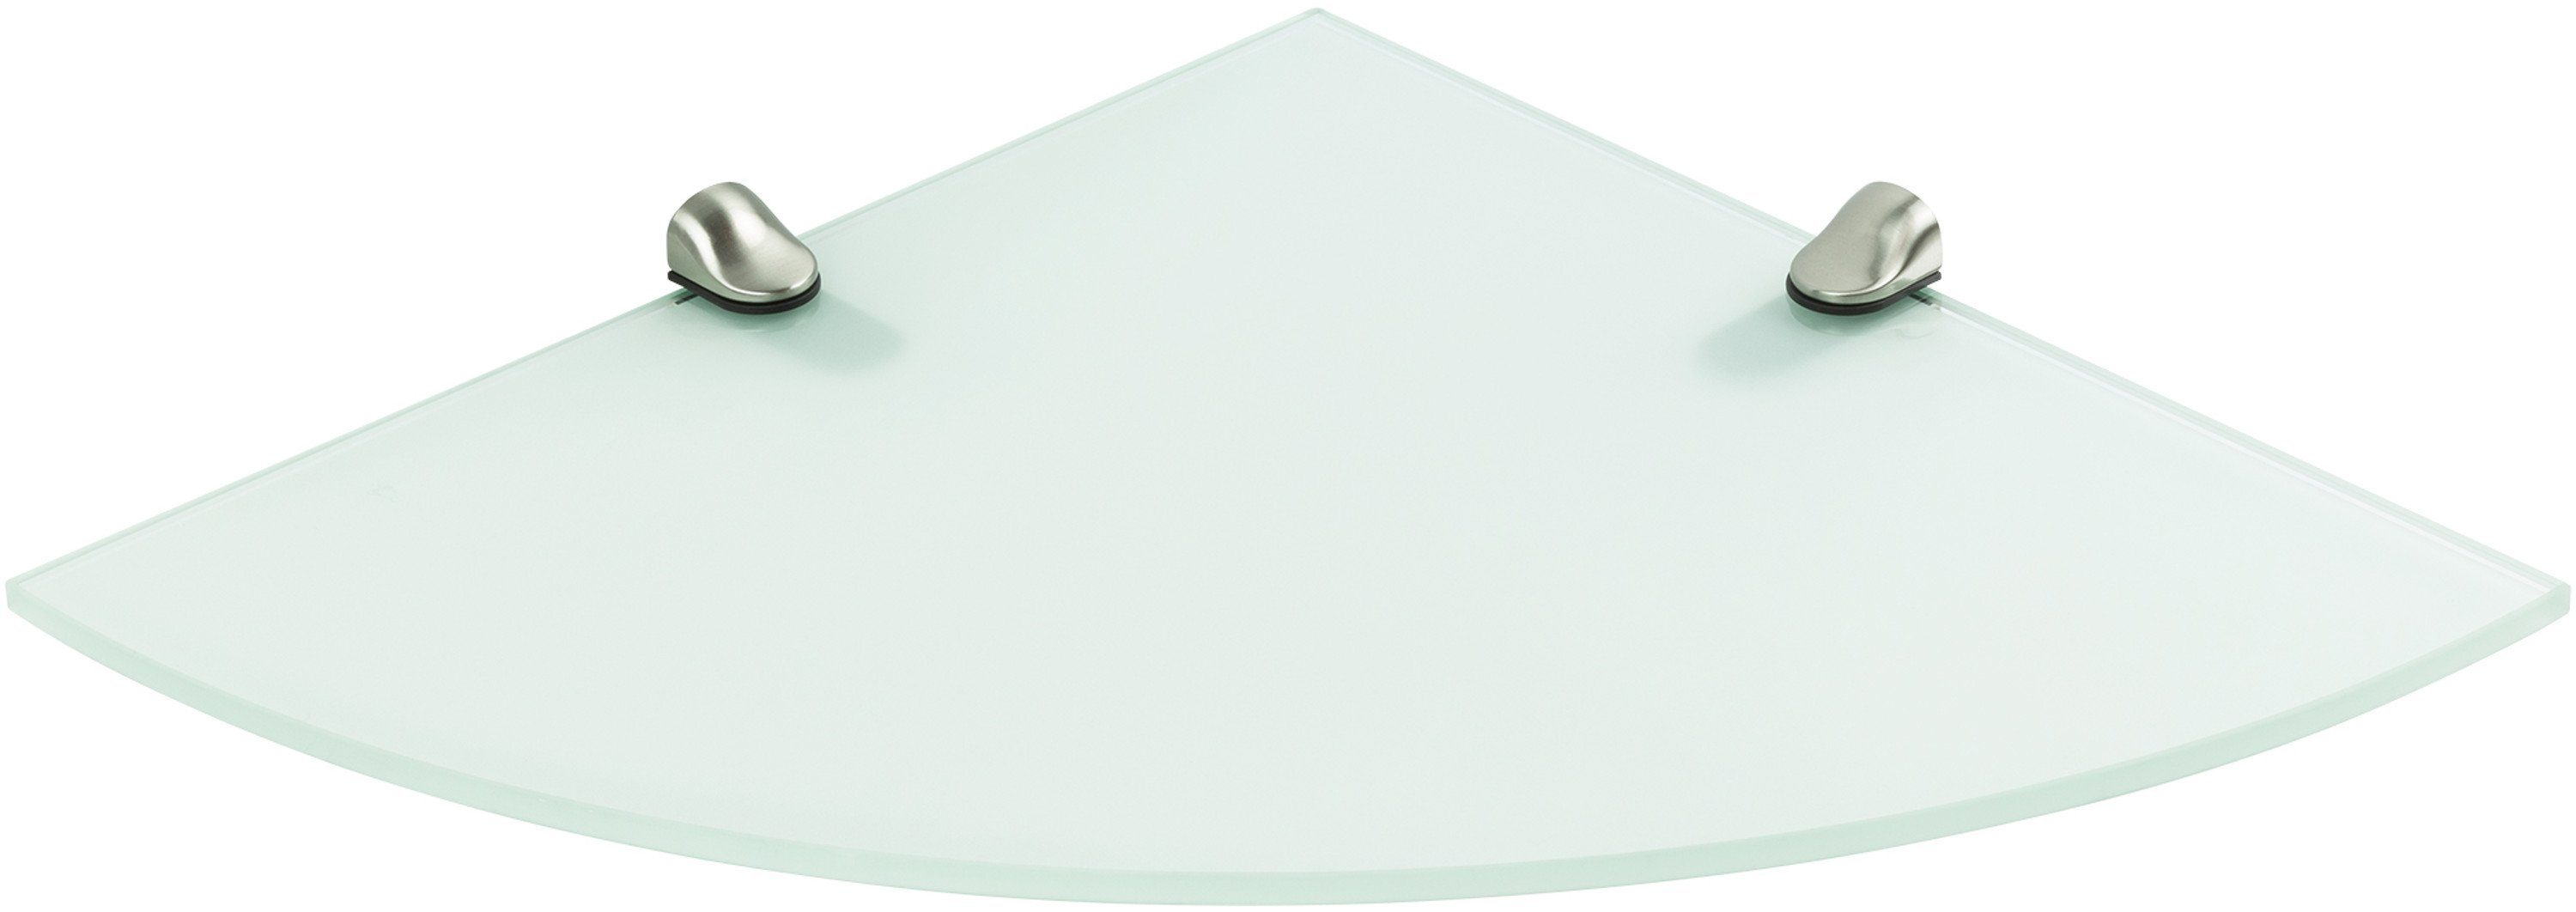 ib style Wandregal Glasregal Viertelkreis 6mm - 25 x 25 cm - satiniert + Clip ILO, Glasboden aus ESG-Sicherheitsglas - Wandregal